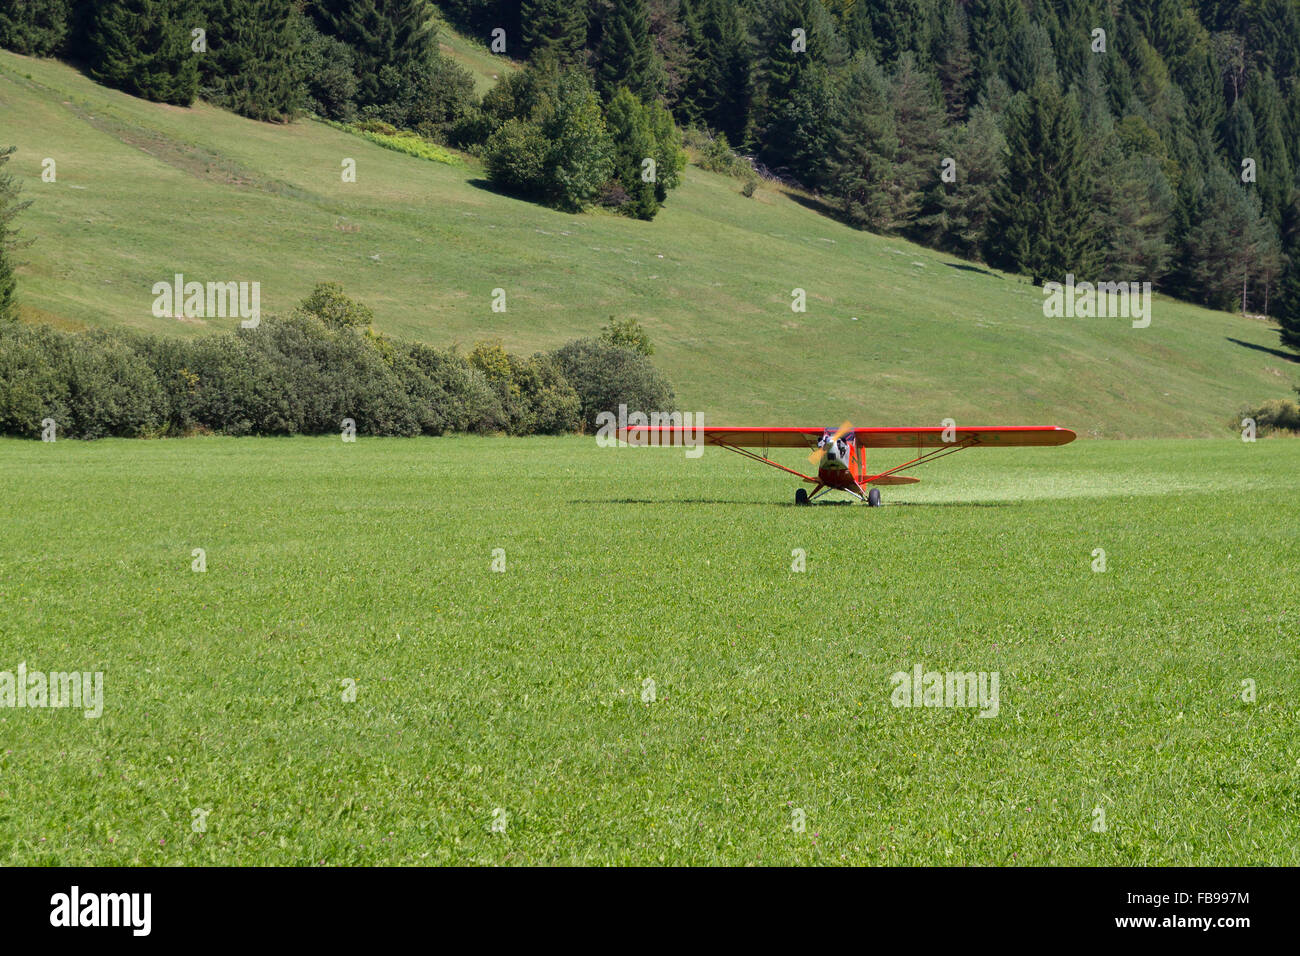 Leichte rote Flugzeug Landung auf einer grünen Wiese, Transport, outdoor Stockfoto